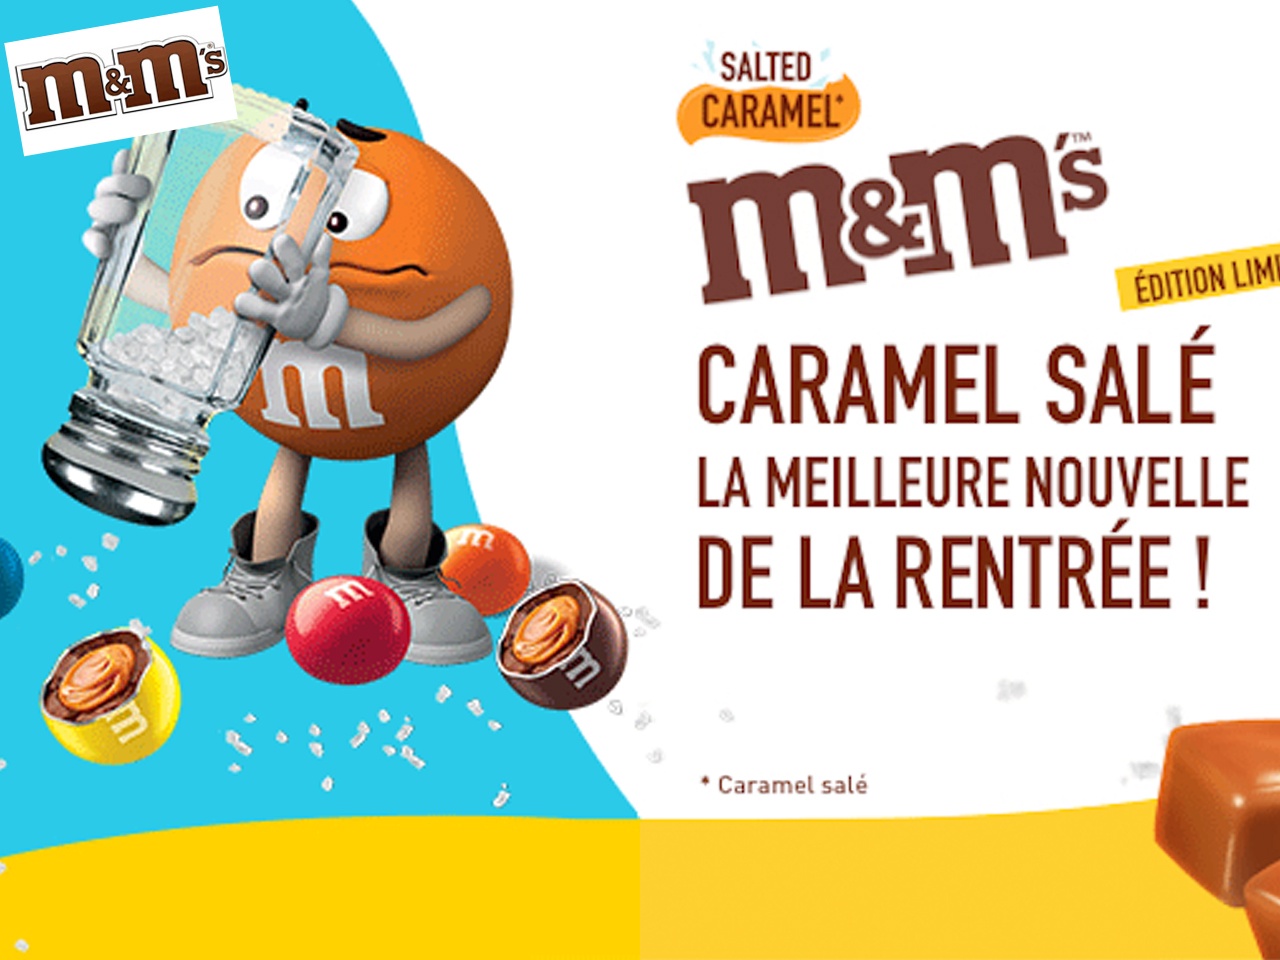 M&M’s : Caramel salé, la nouveauté de la rentrée !